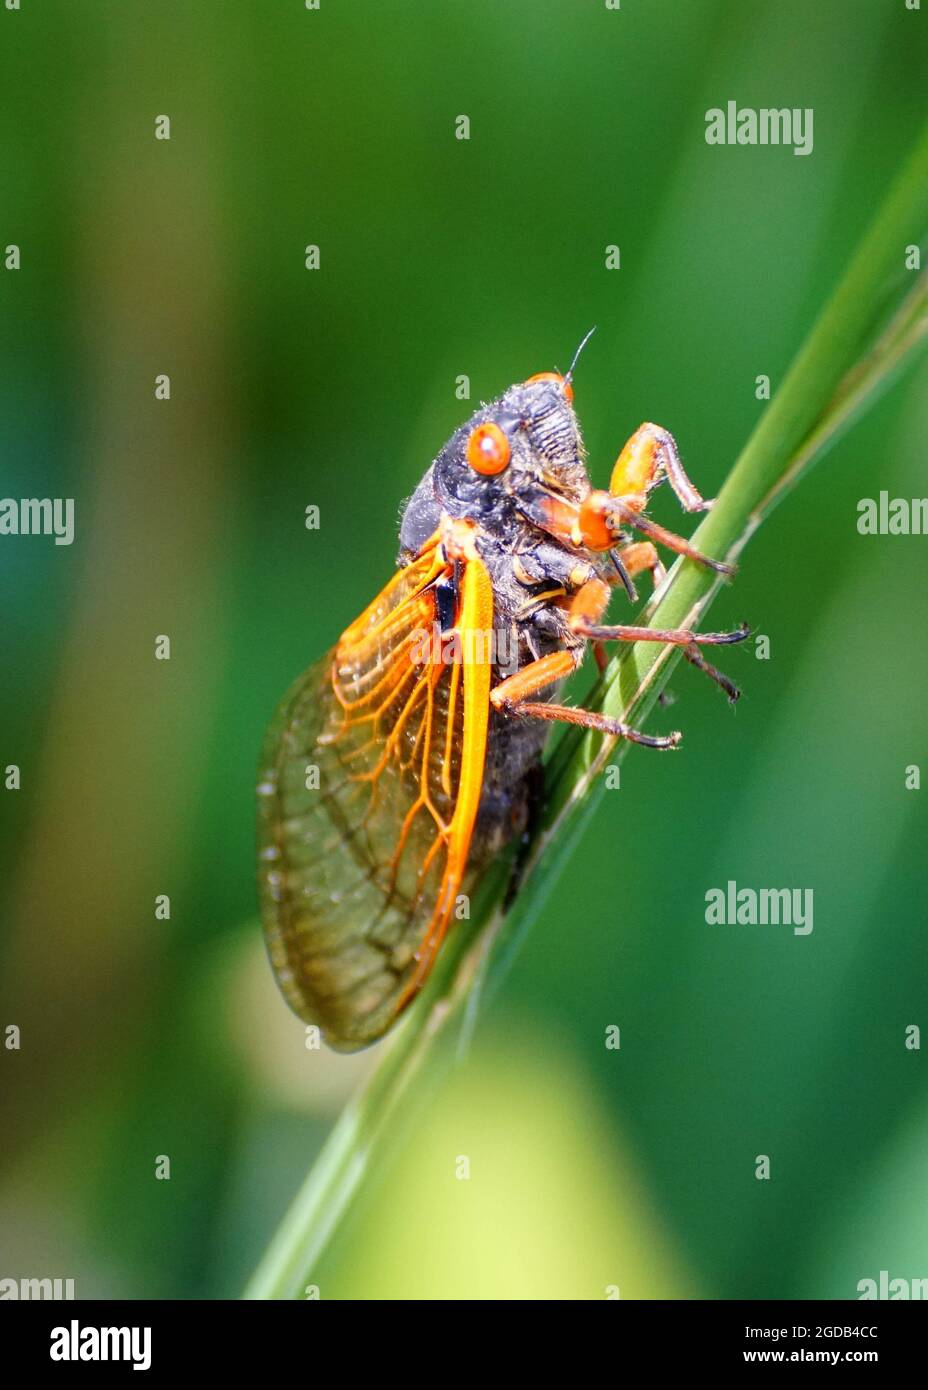 Nahaufnahme einer Zikade mit roten Flügeln am Rand eines Grases Stockfoto